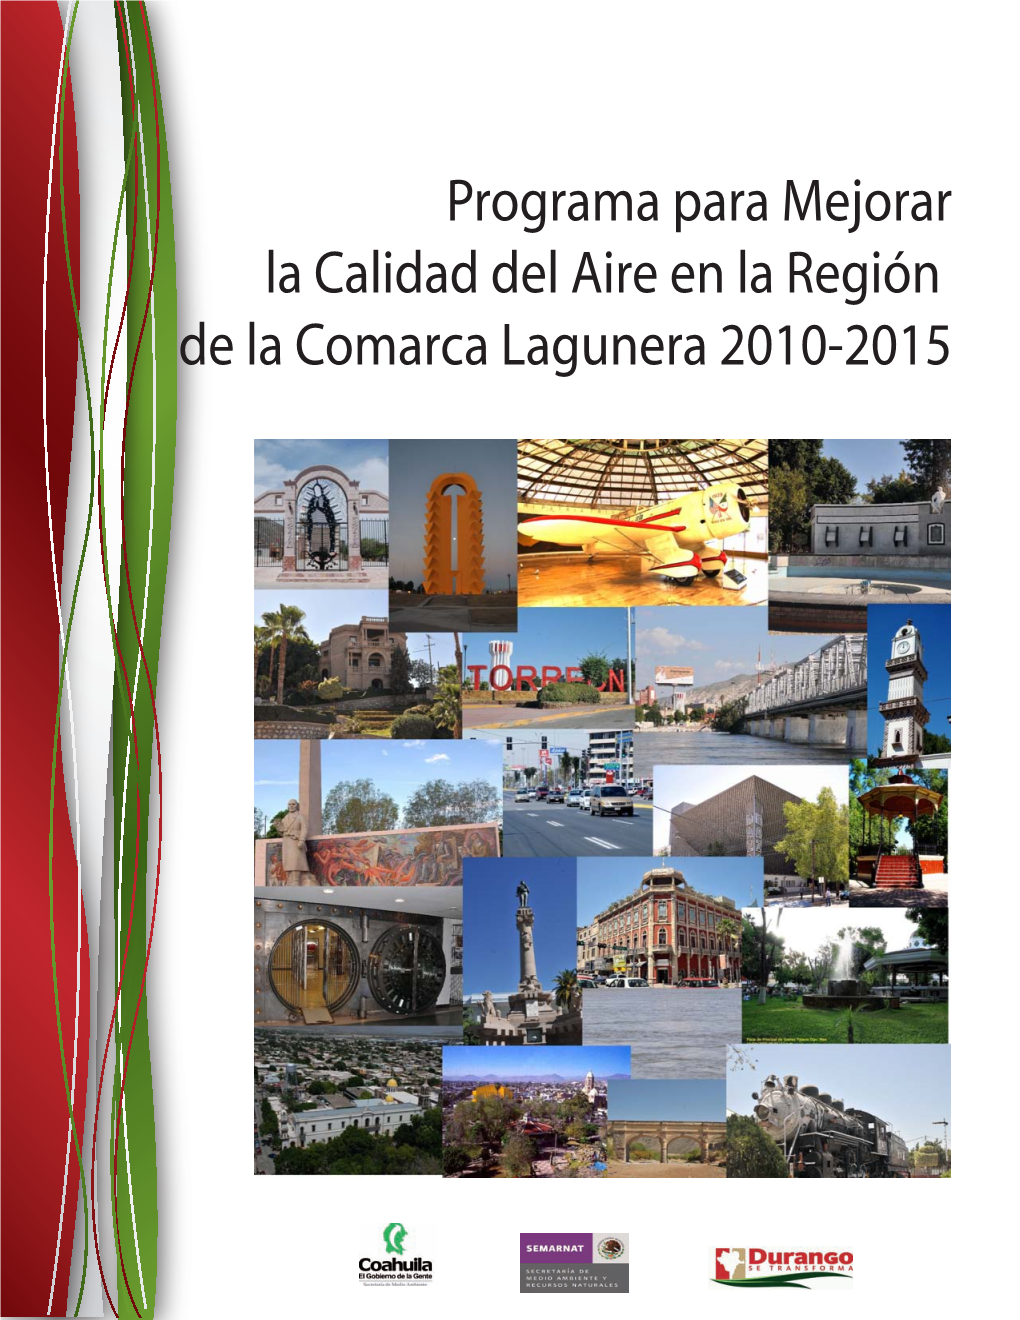 Programa Para Mejorar La Calidad Del Aire En La Región De La Comarca Lagunera 2010-2015